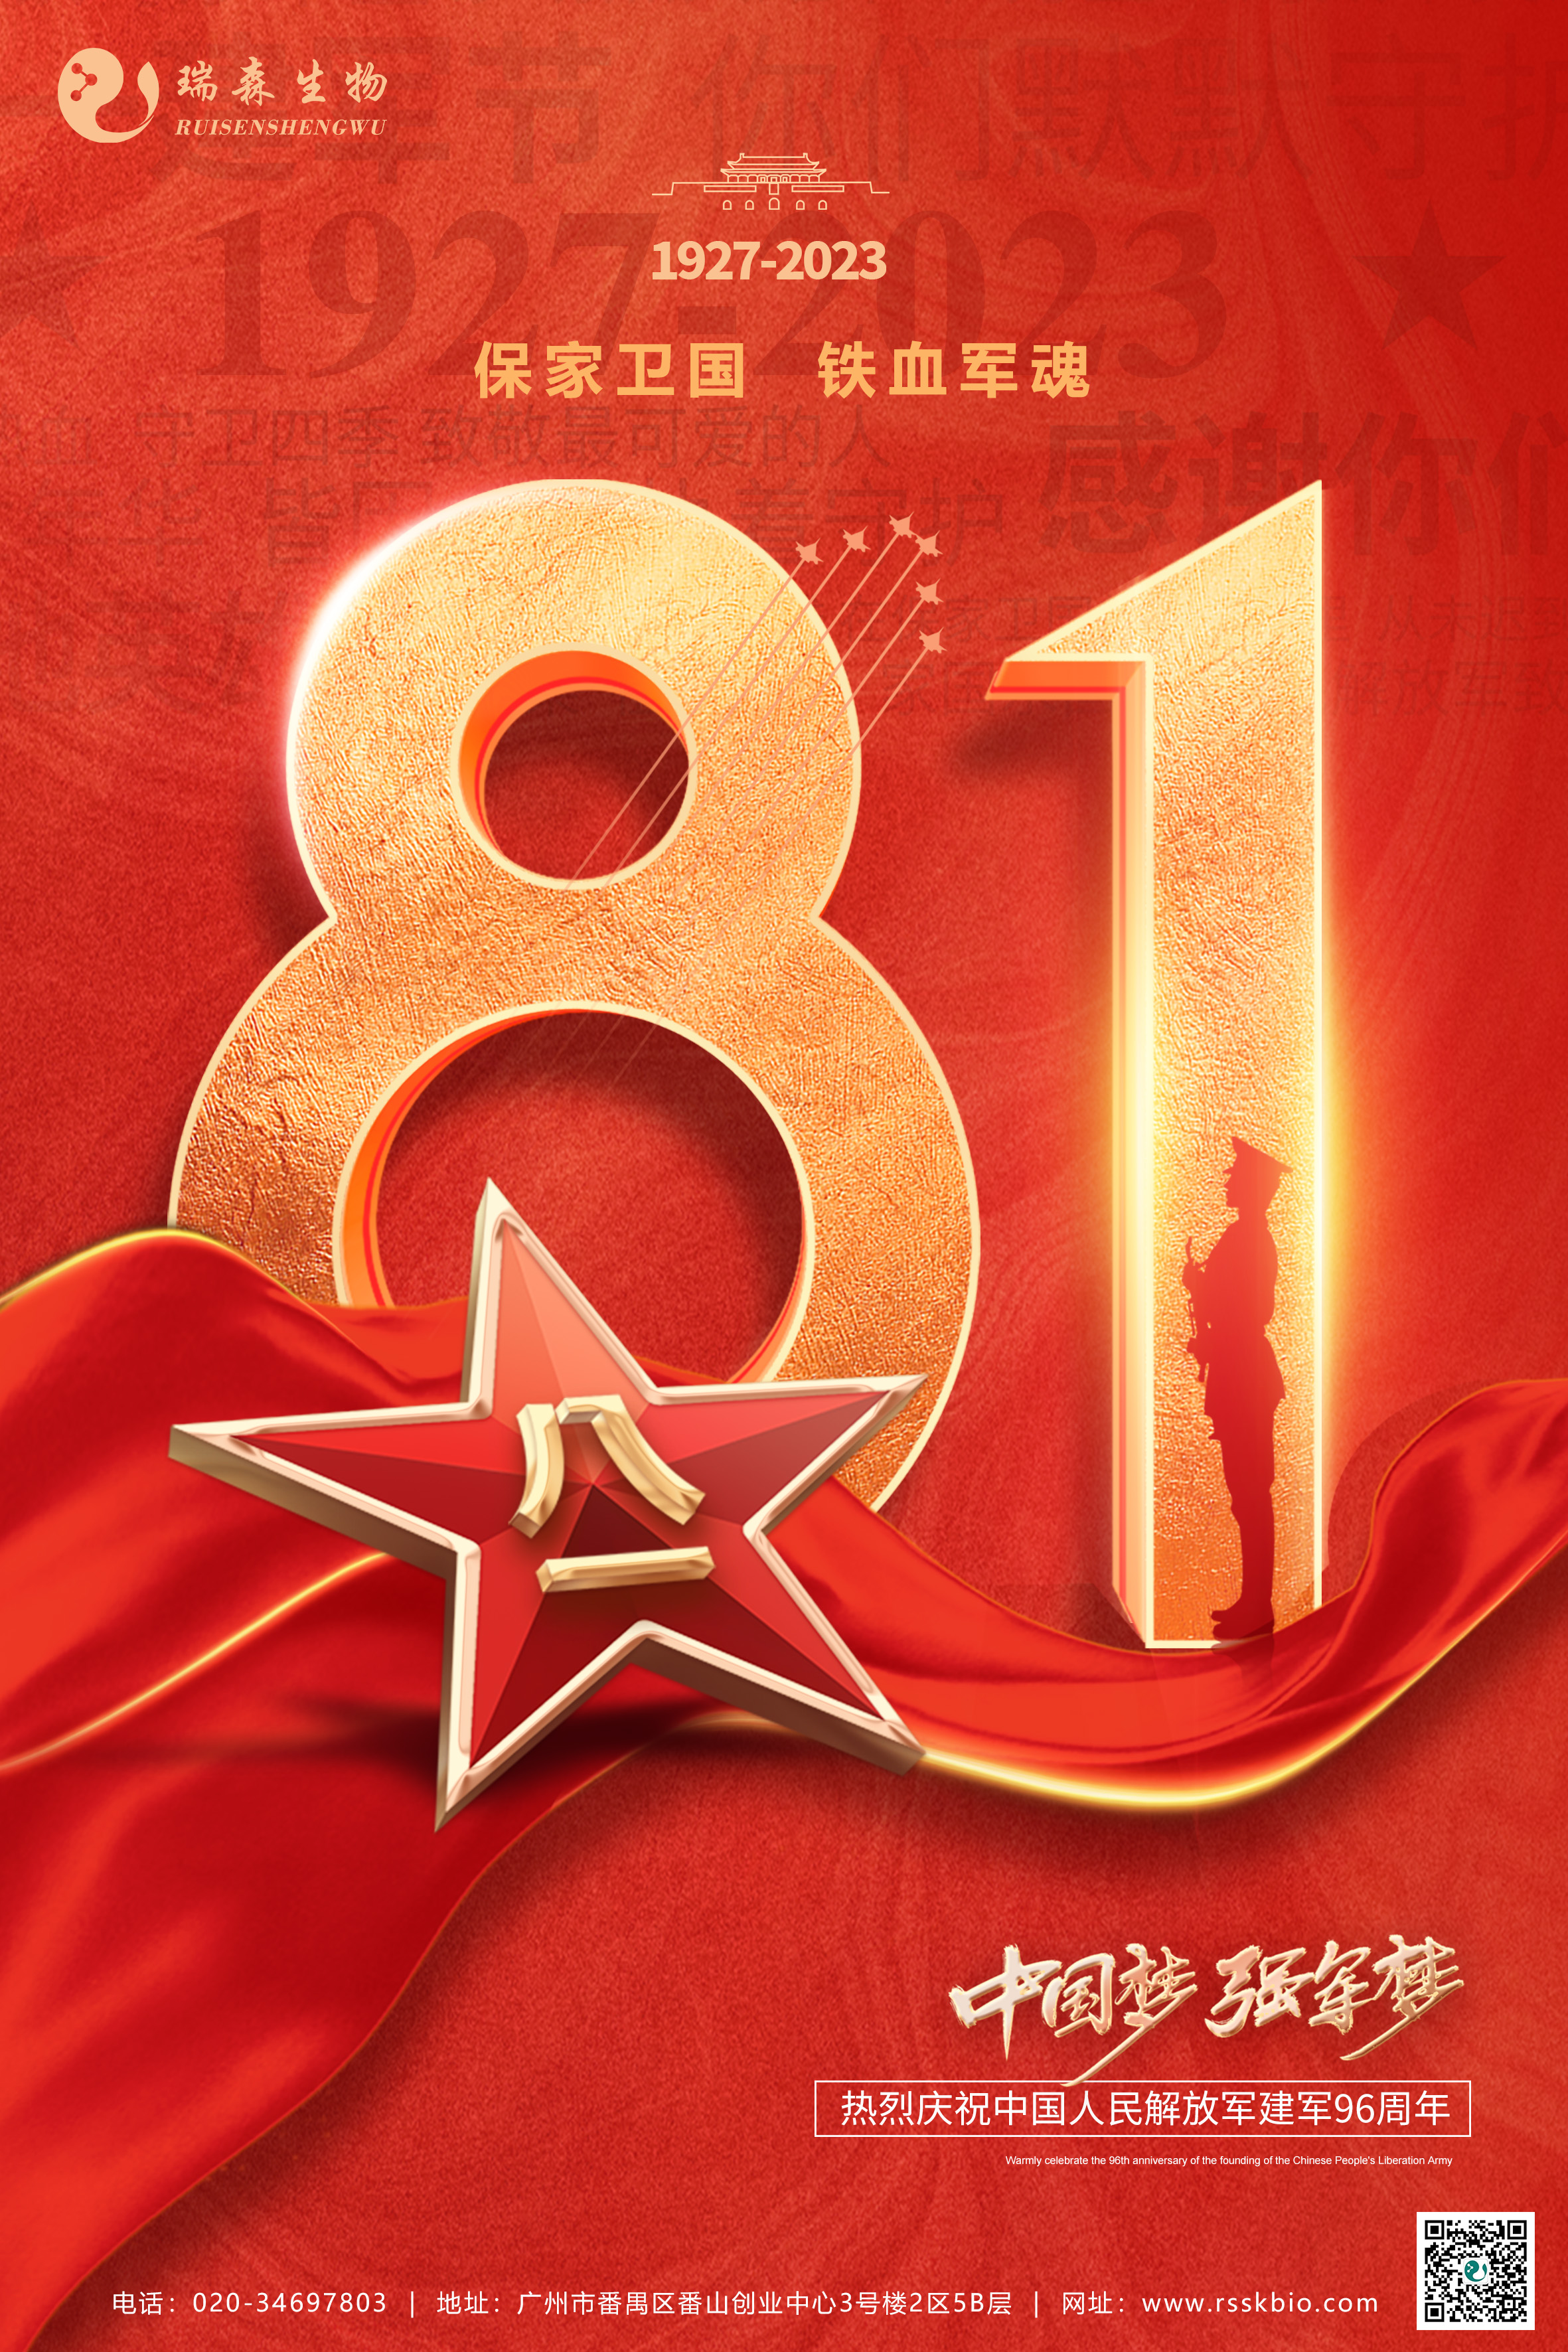 建军节 | 热烈庆祝中国人民解放军建军96周年